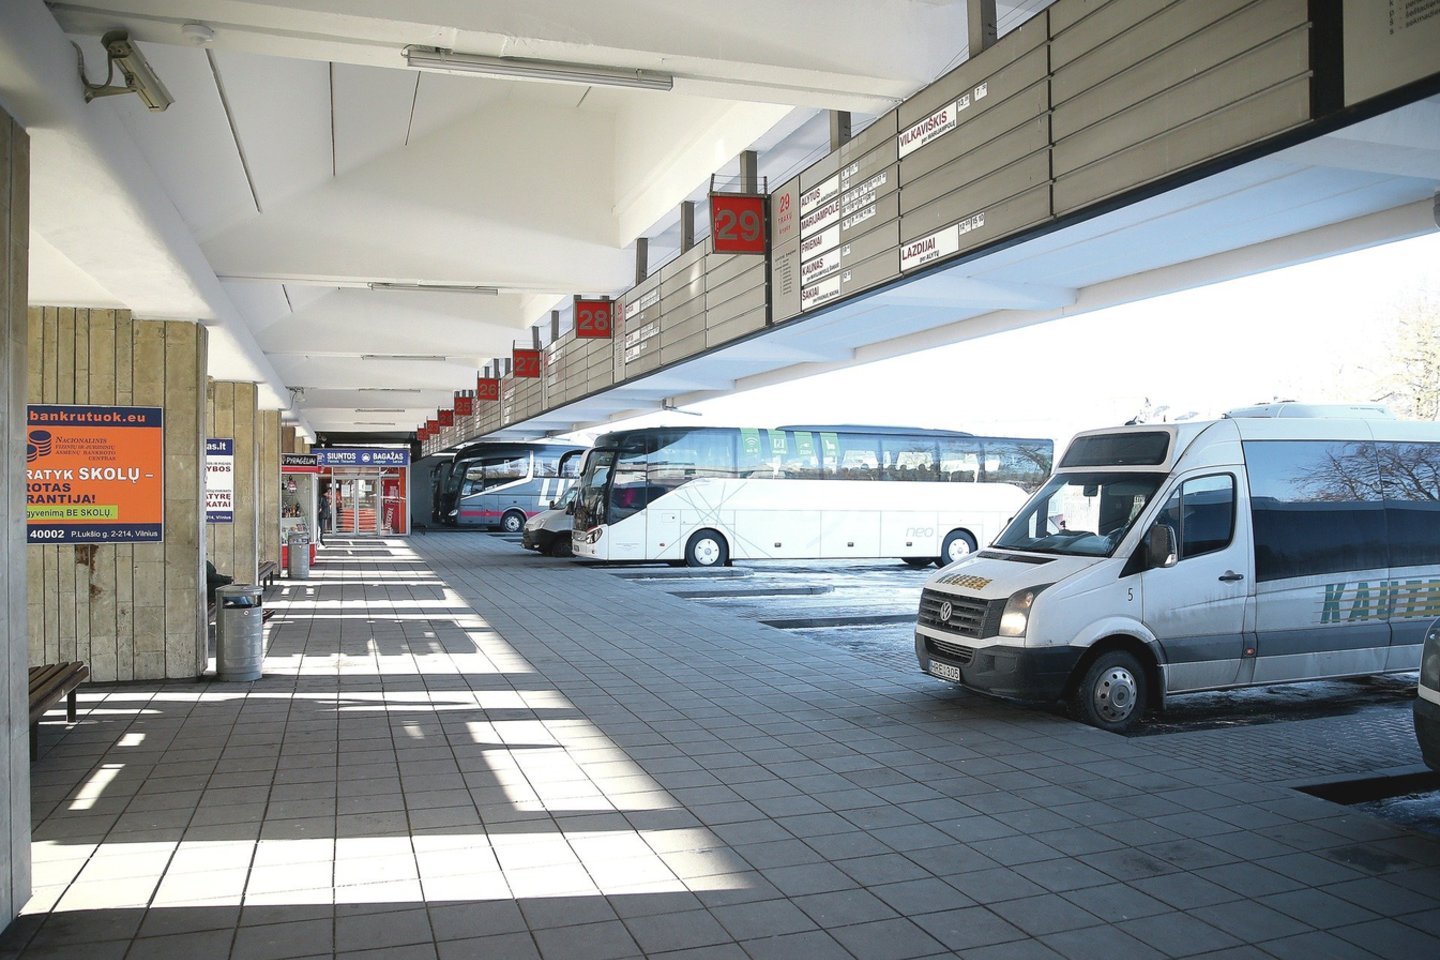 Tarpmiestiniai autobusai Lietuvoje dažniausiai aptarnauja ir į rajono centrą vykstančius provincijos gyventojus.<br>R.Danisevičiaus nuotr.